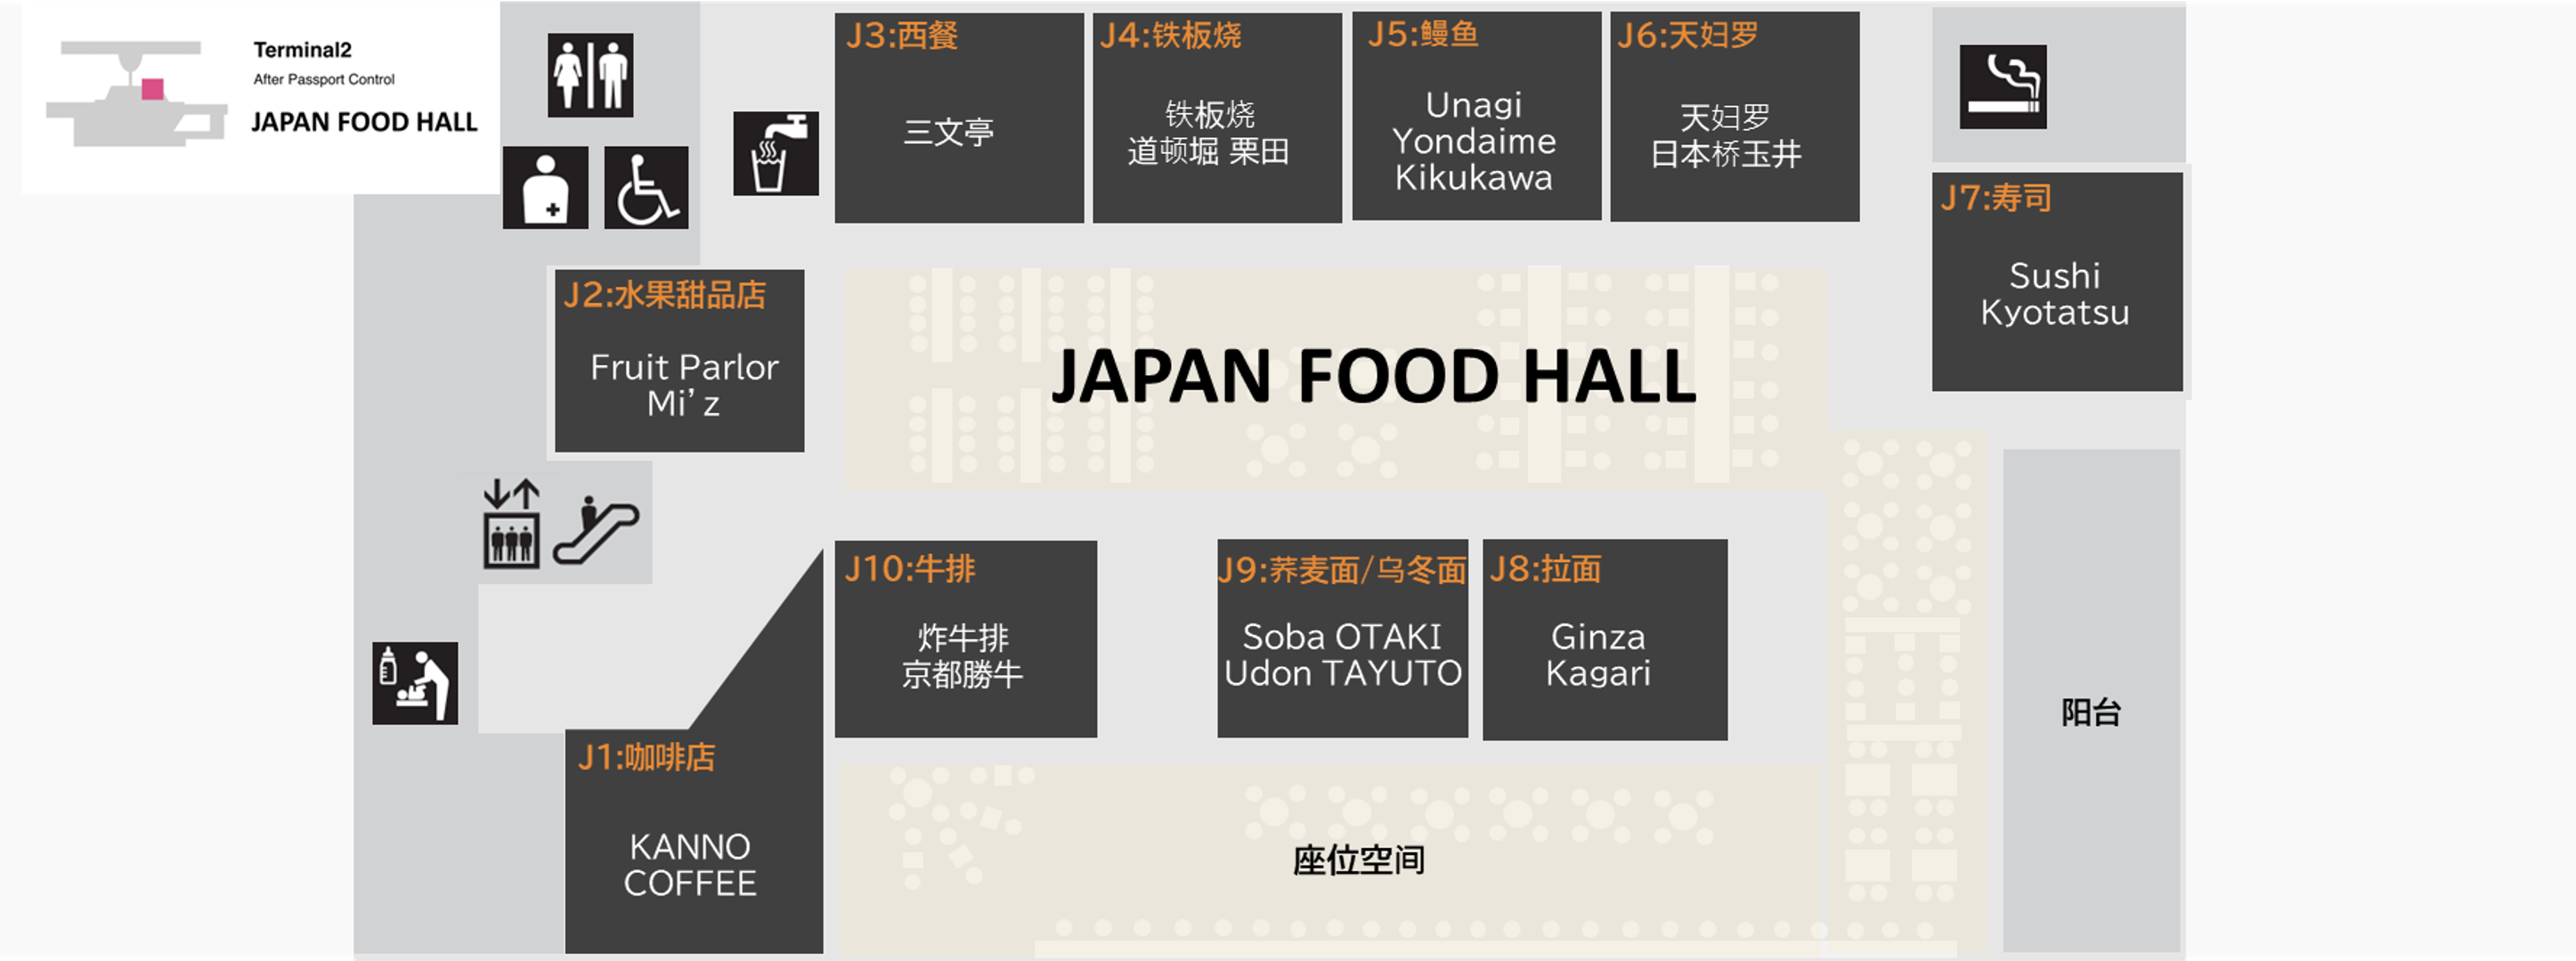 第2航站楼 主馆 JAPAN FOOD HALL